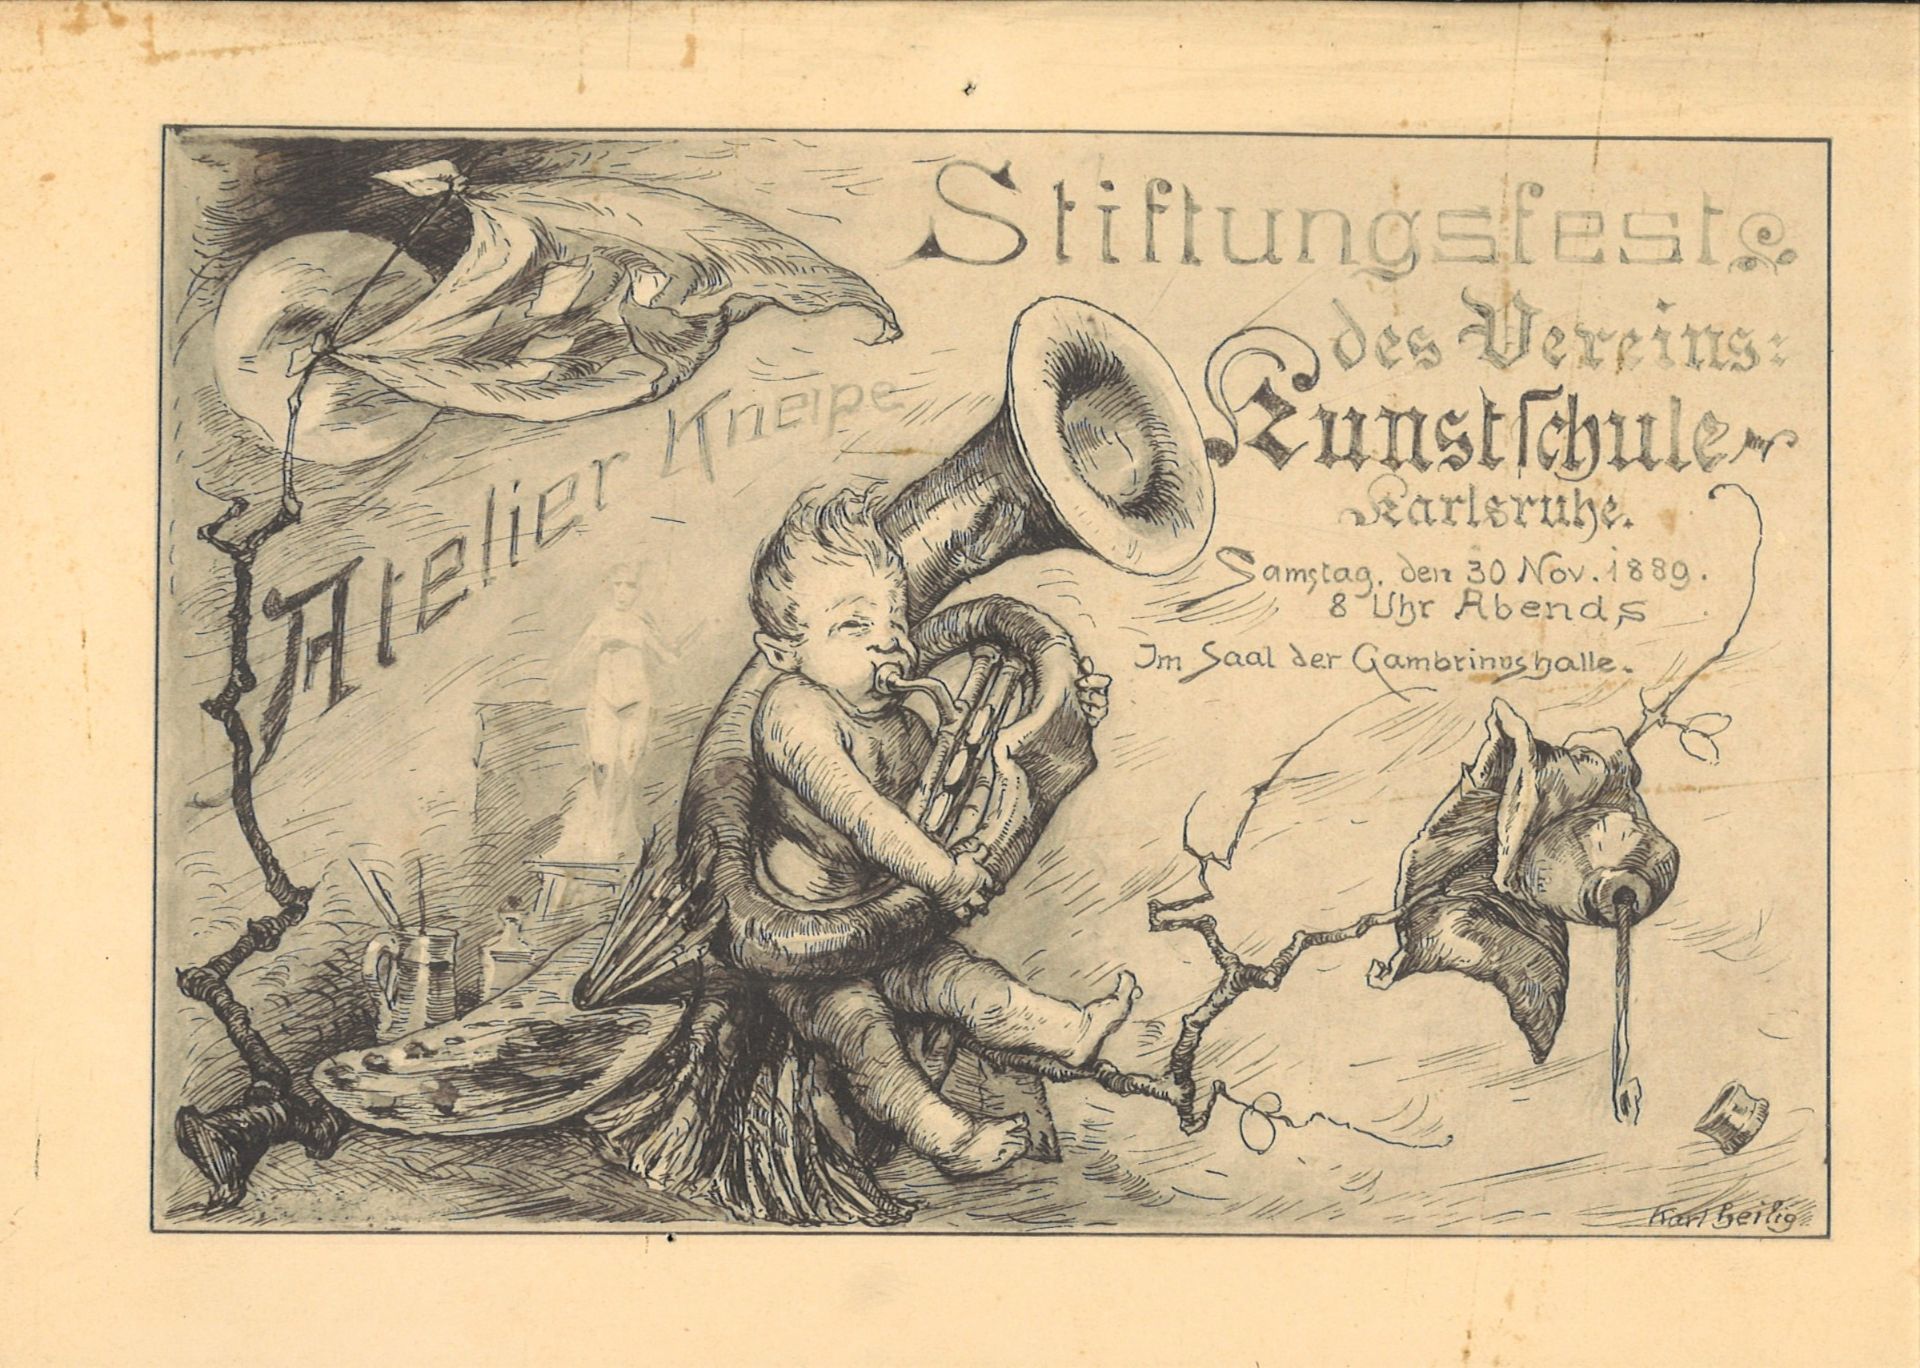 Radierung Karl Heilig (1863-1910) Atelier Kneipe. Stiftungsfest des Vereins: Kunstschule